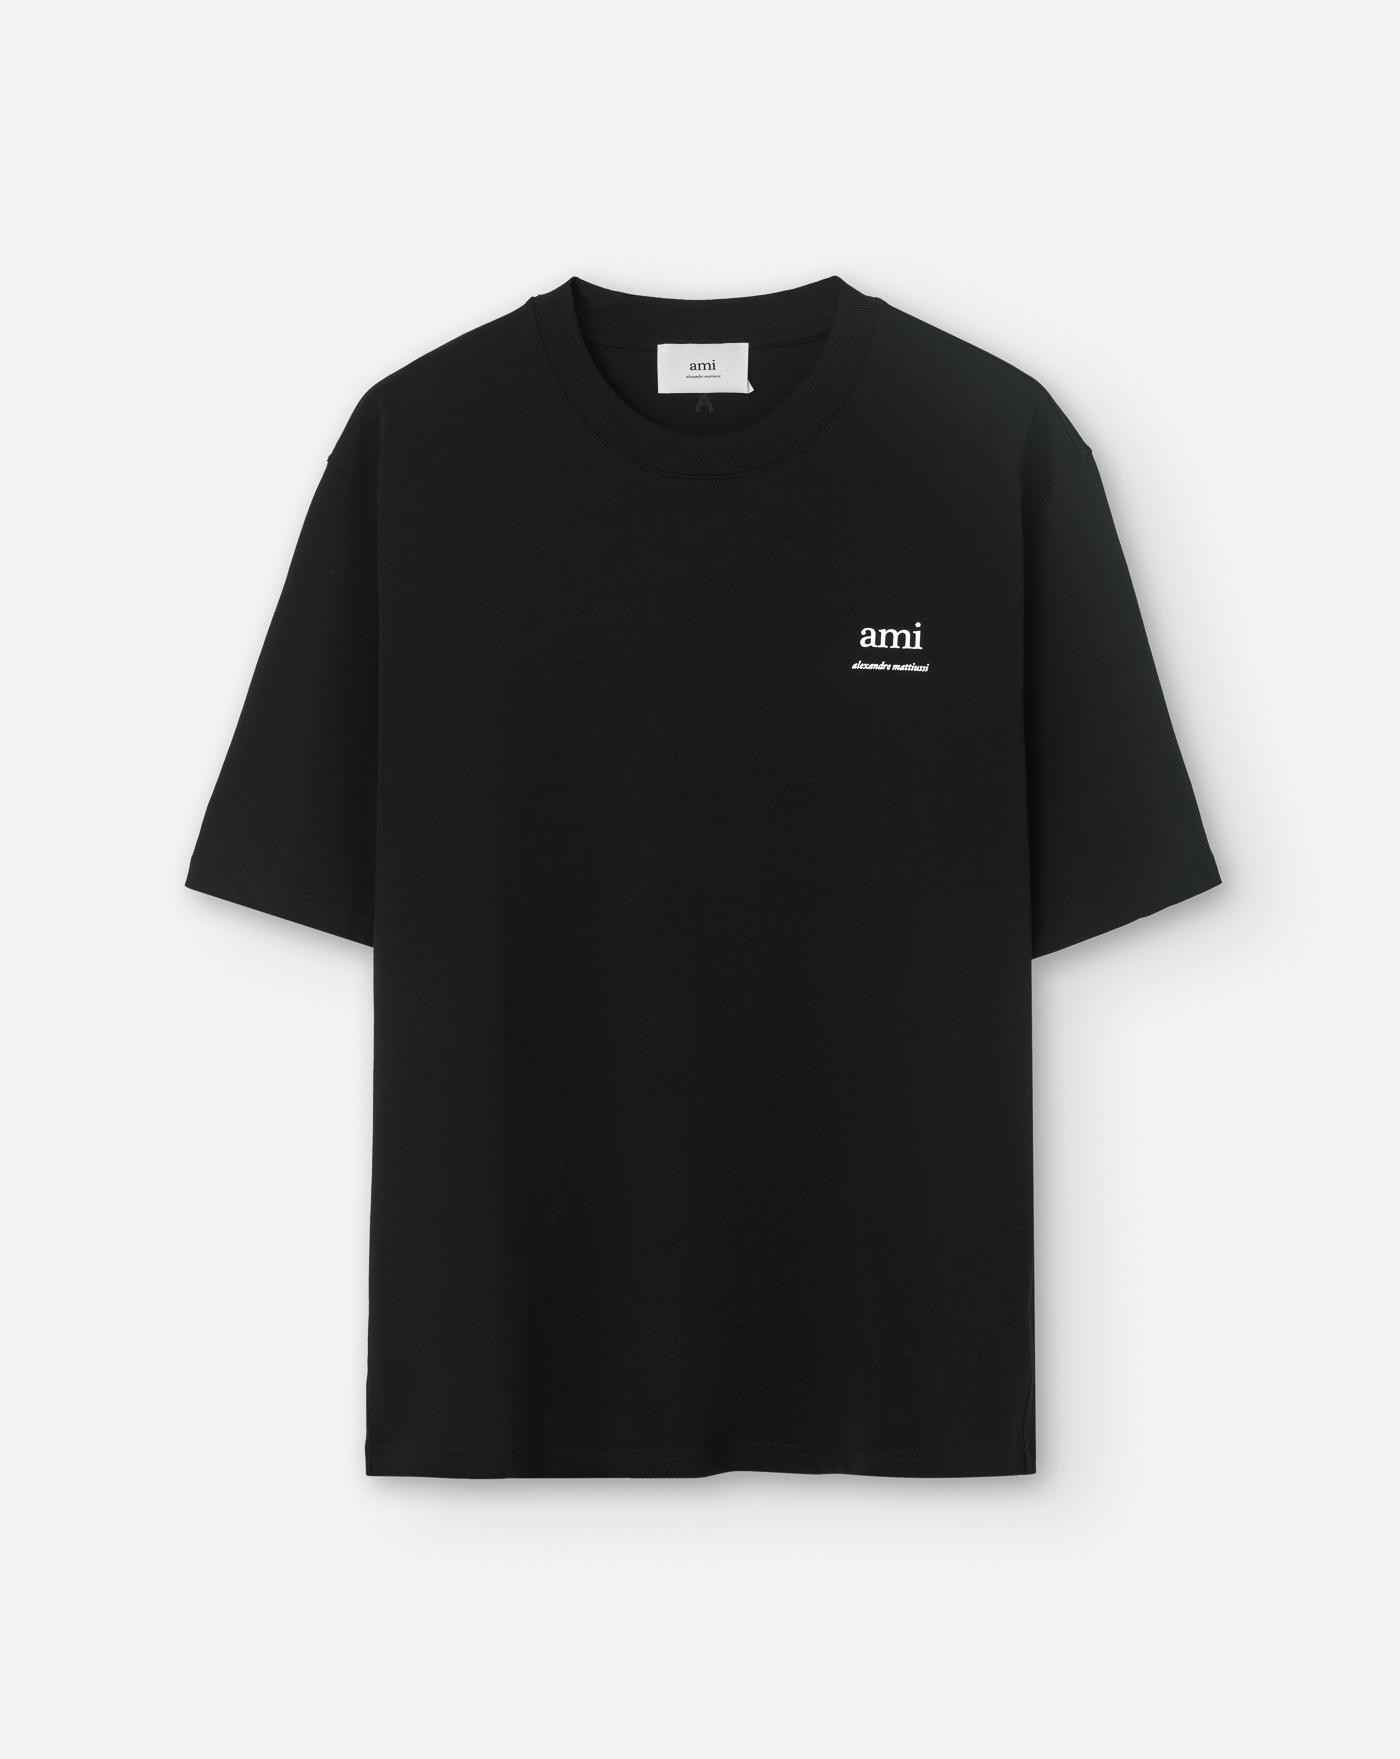 ami-paris-camiseta-alexandre-mattiussi-t-shirt-black-negra